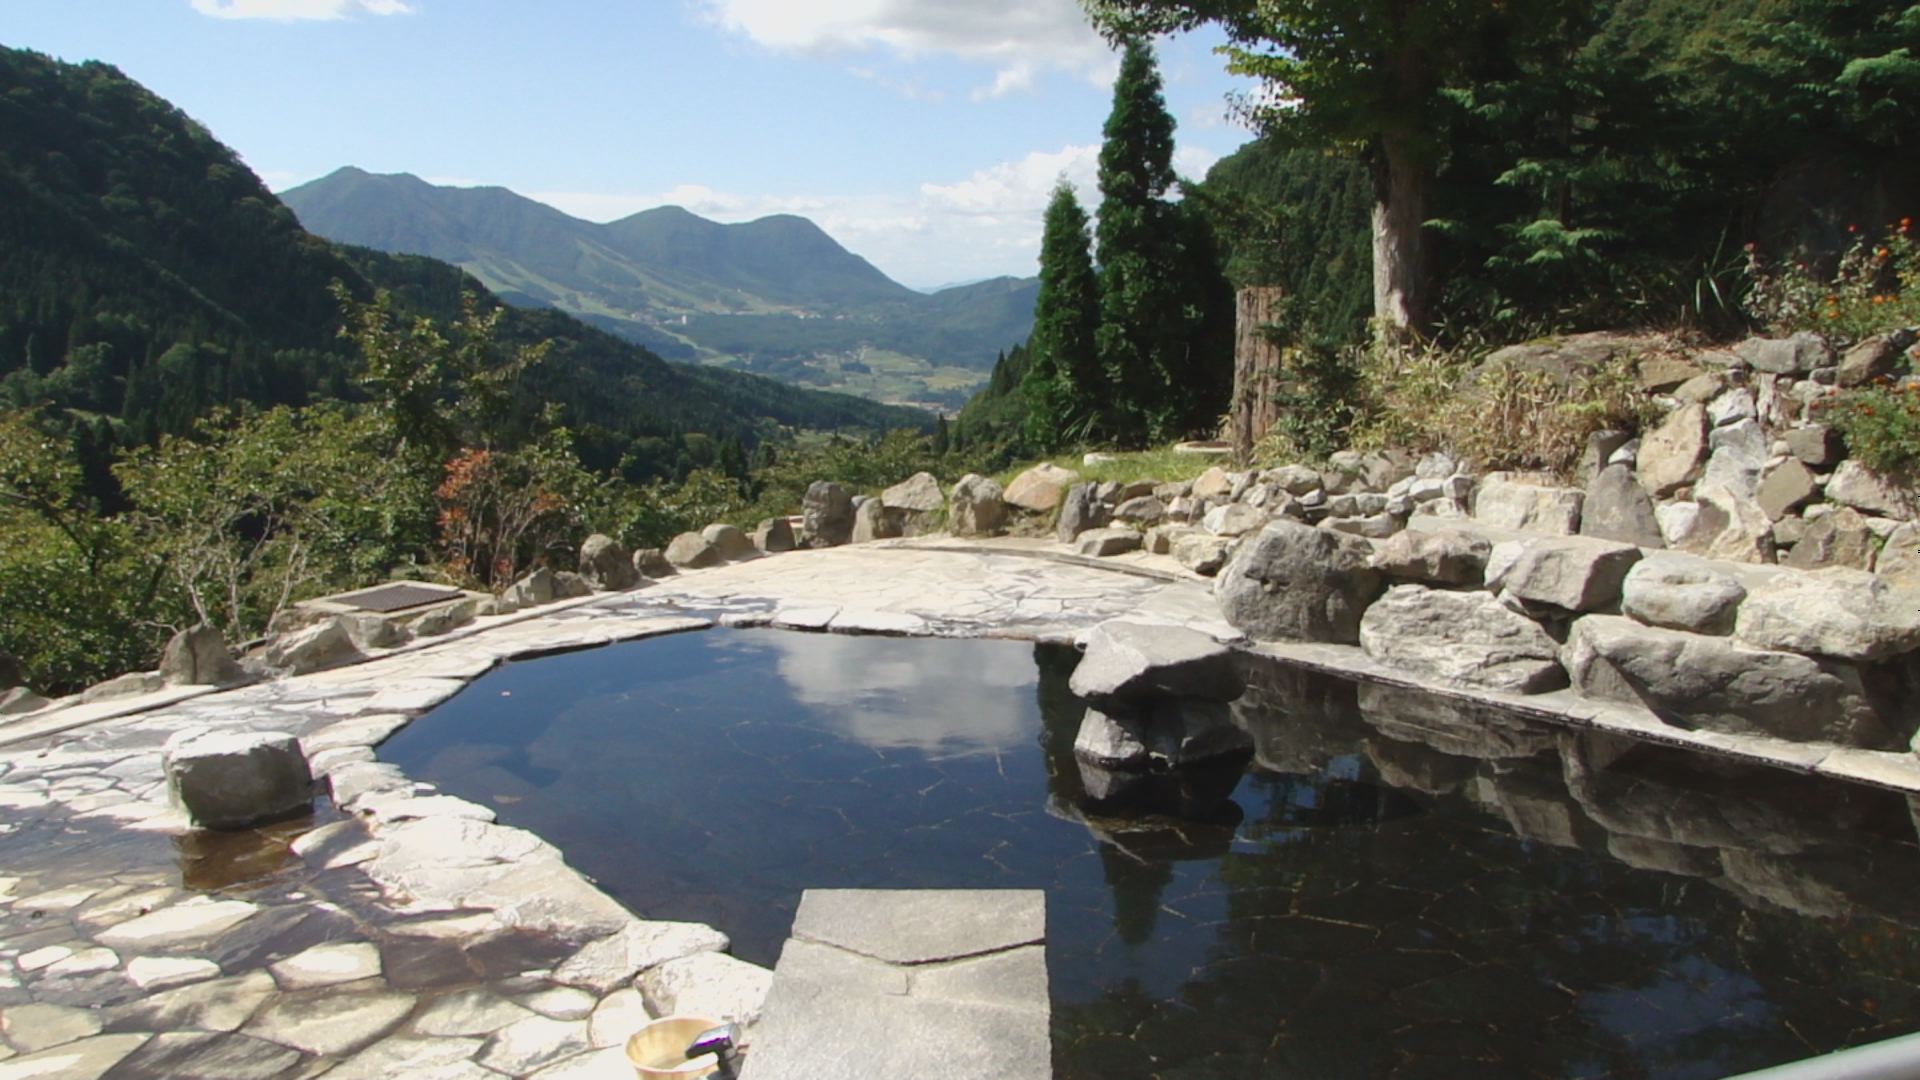 木島平村にある馬曲温泉の眺めが良い露天風呂